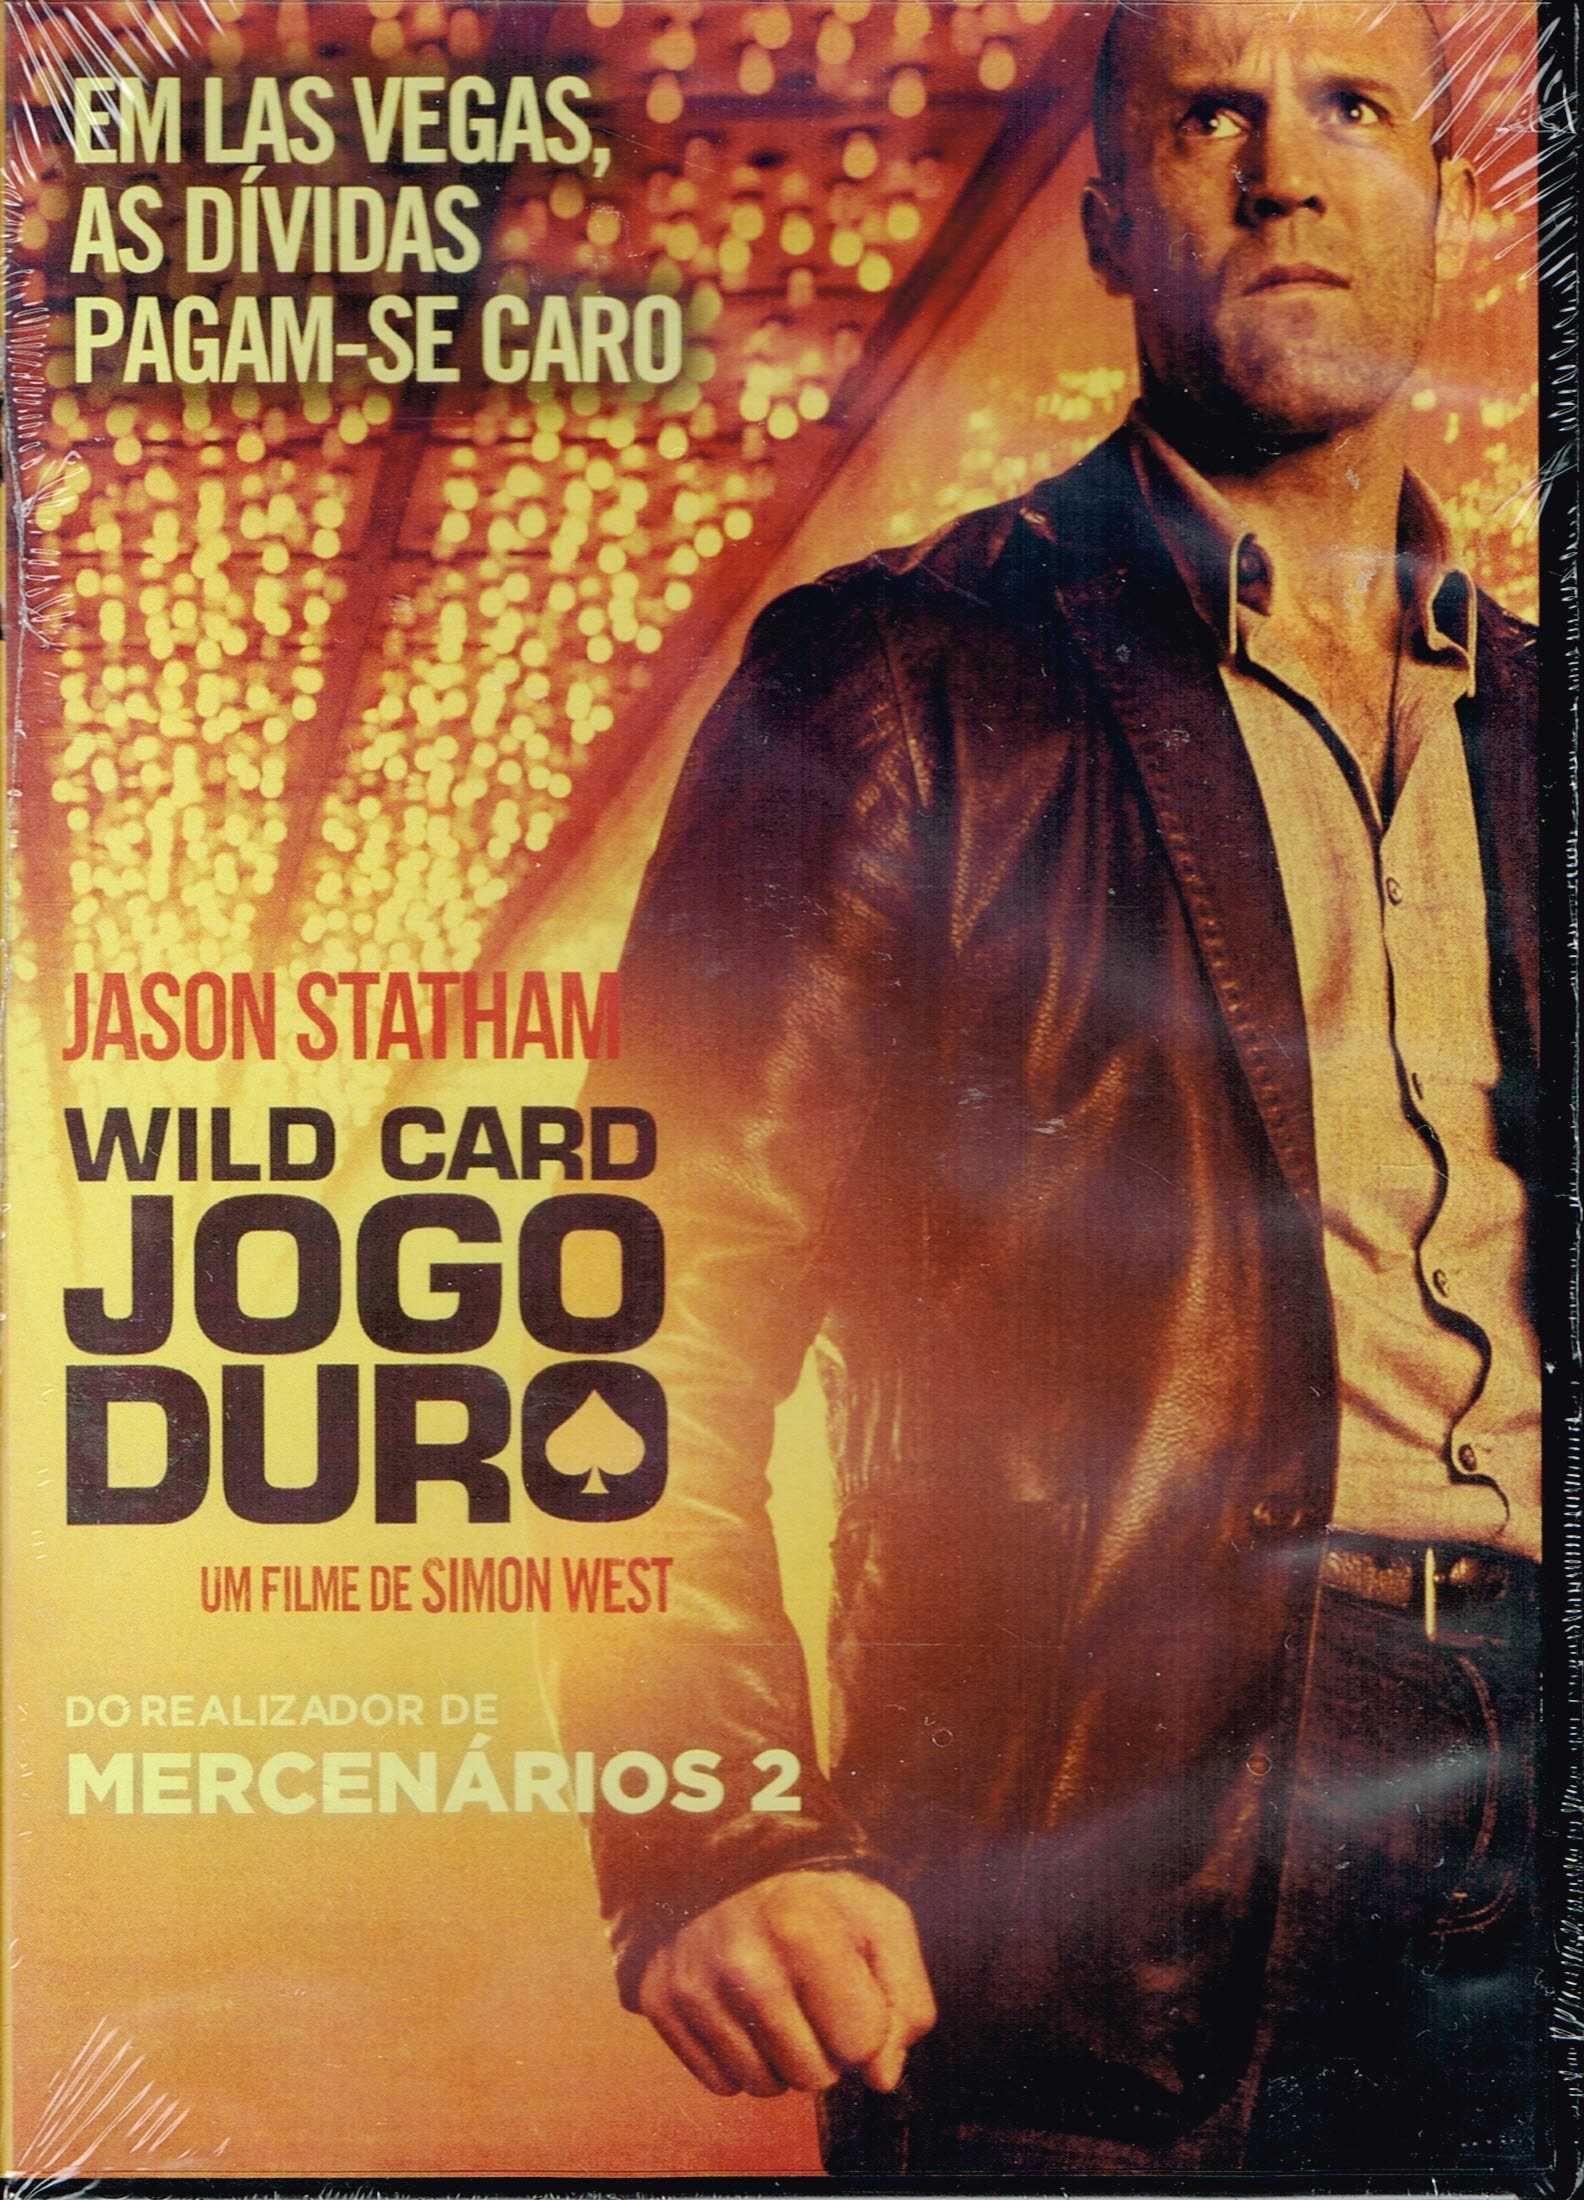 Filme em DVD: Jogo Duro "Wild Card" - NOVO! SELADO!